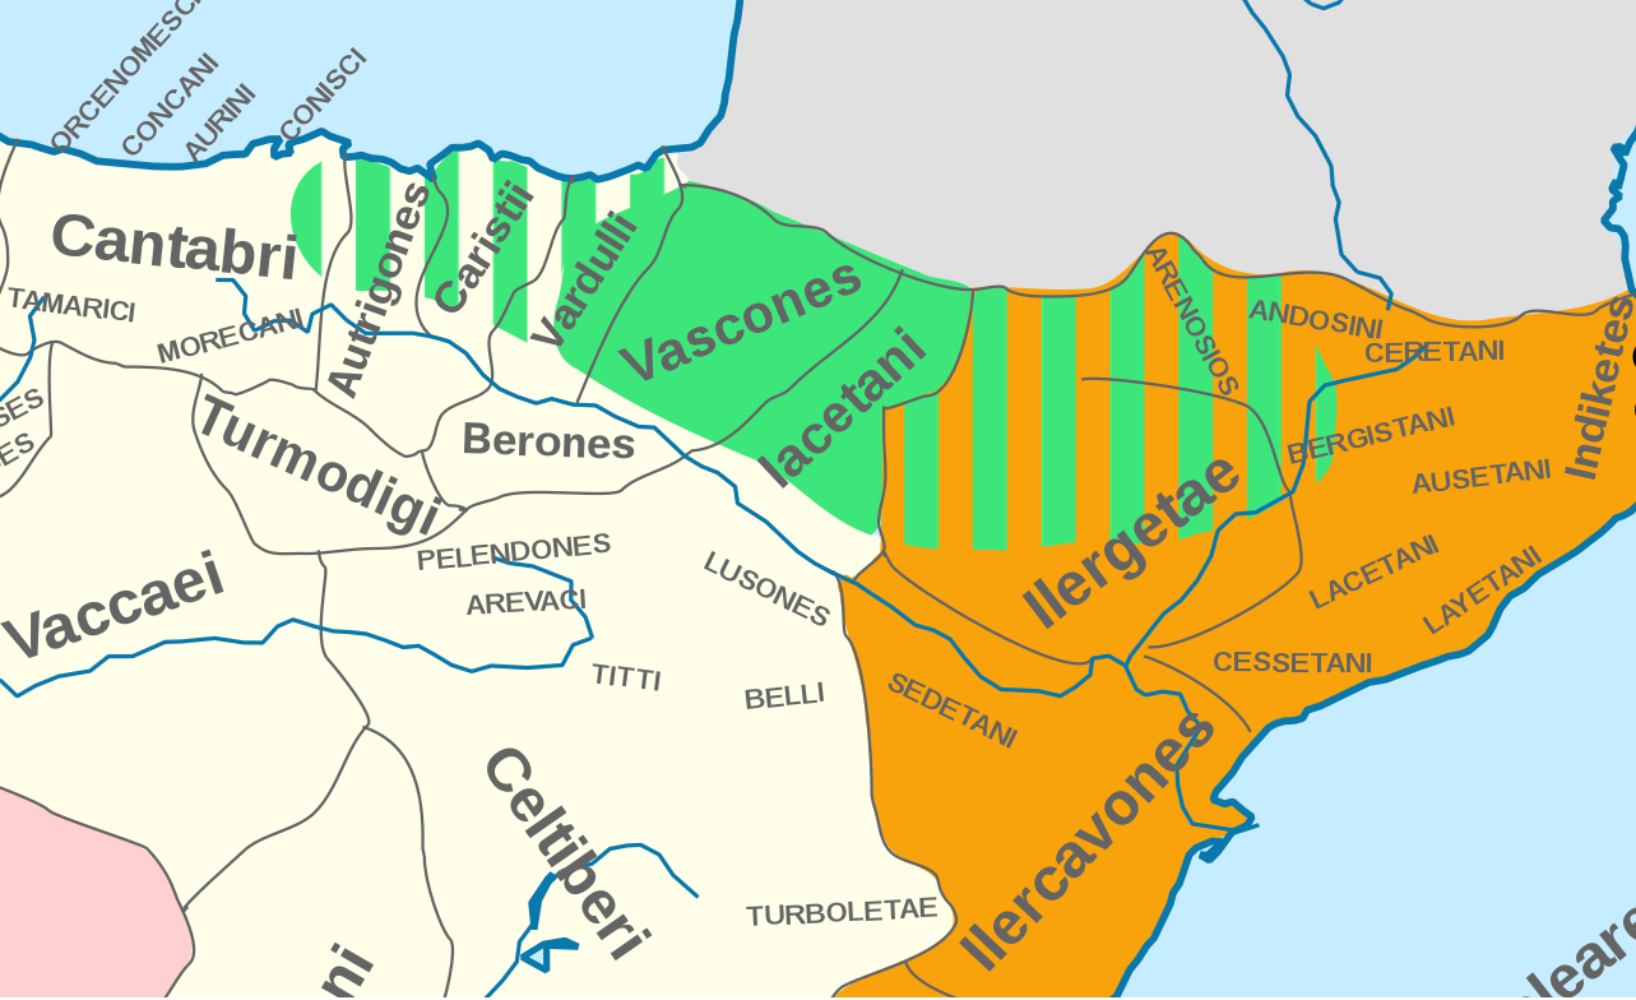 Mapa dels pobles pre romans de la vall de l'Ebre. Font Universitat de Lisboa